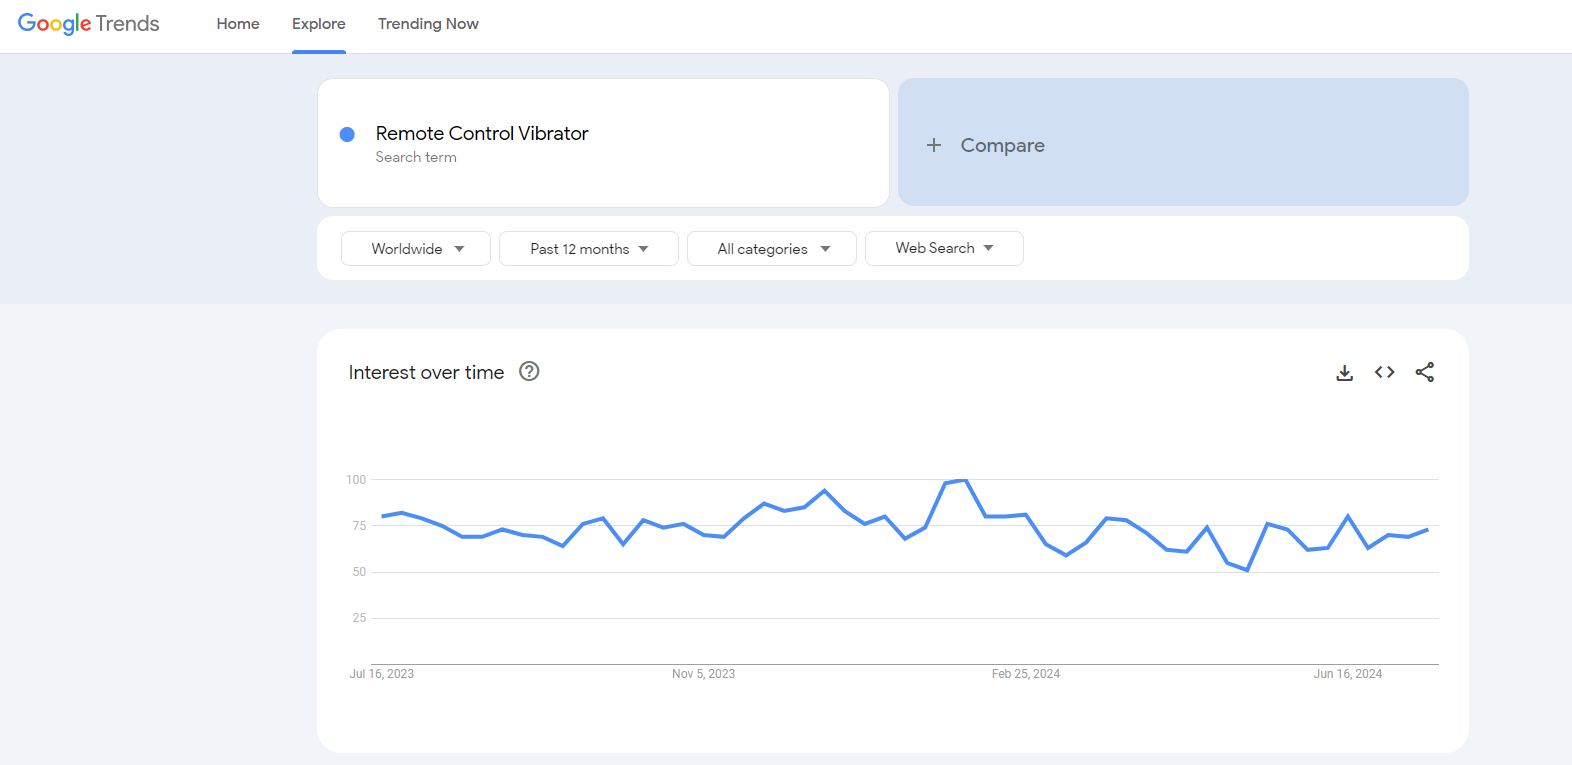 remote control vibrator google trends results